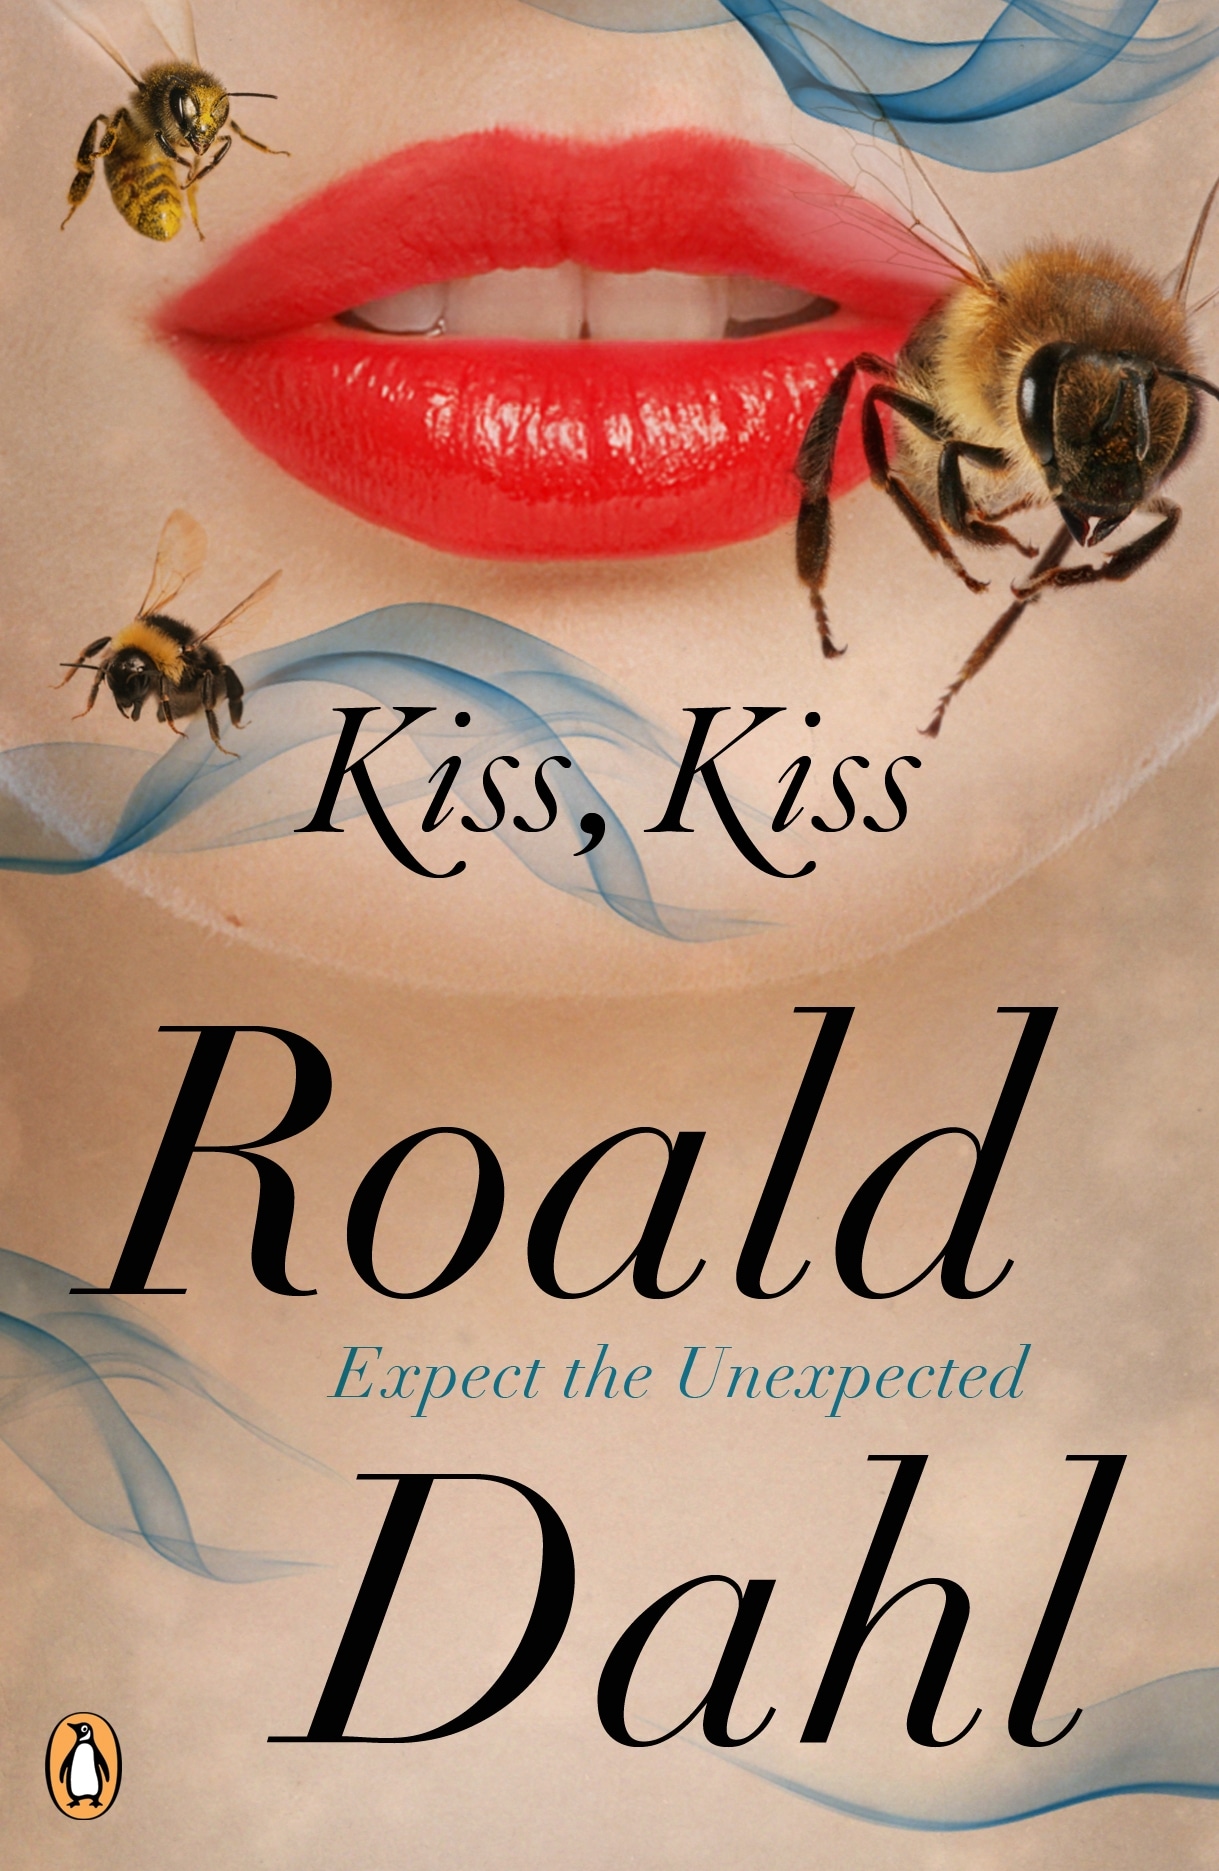 Book “Kiss Kiss” by Roald Dahl — September 1, 2011